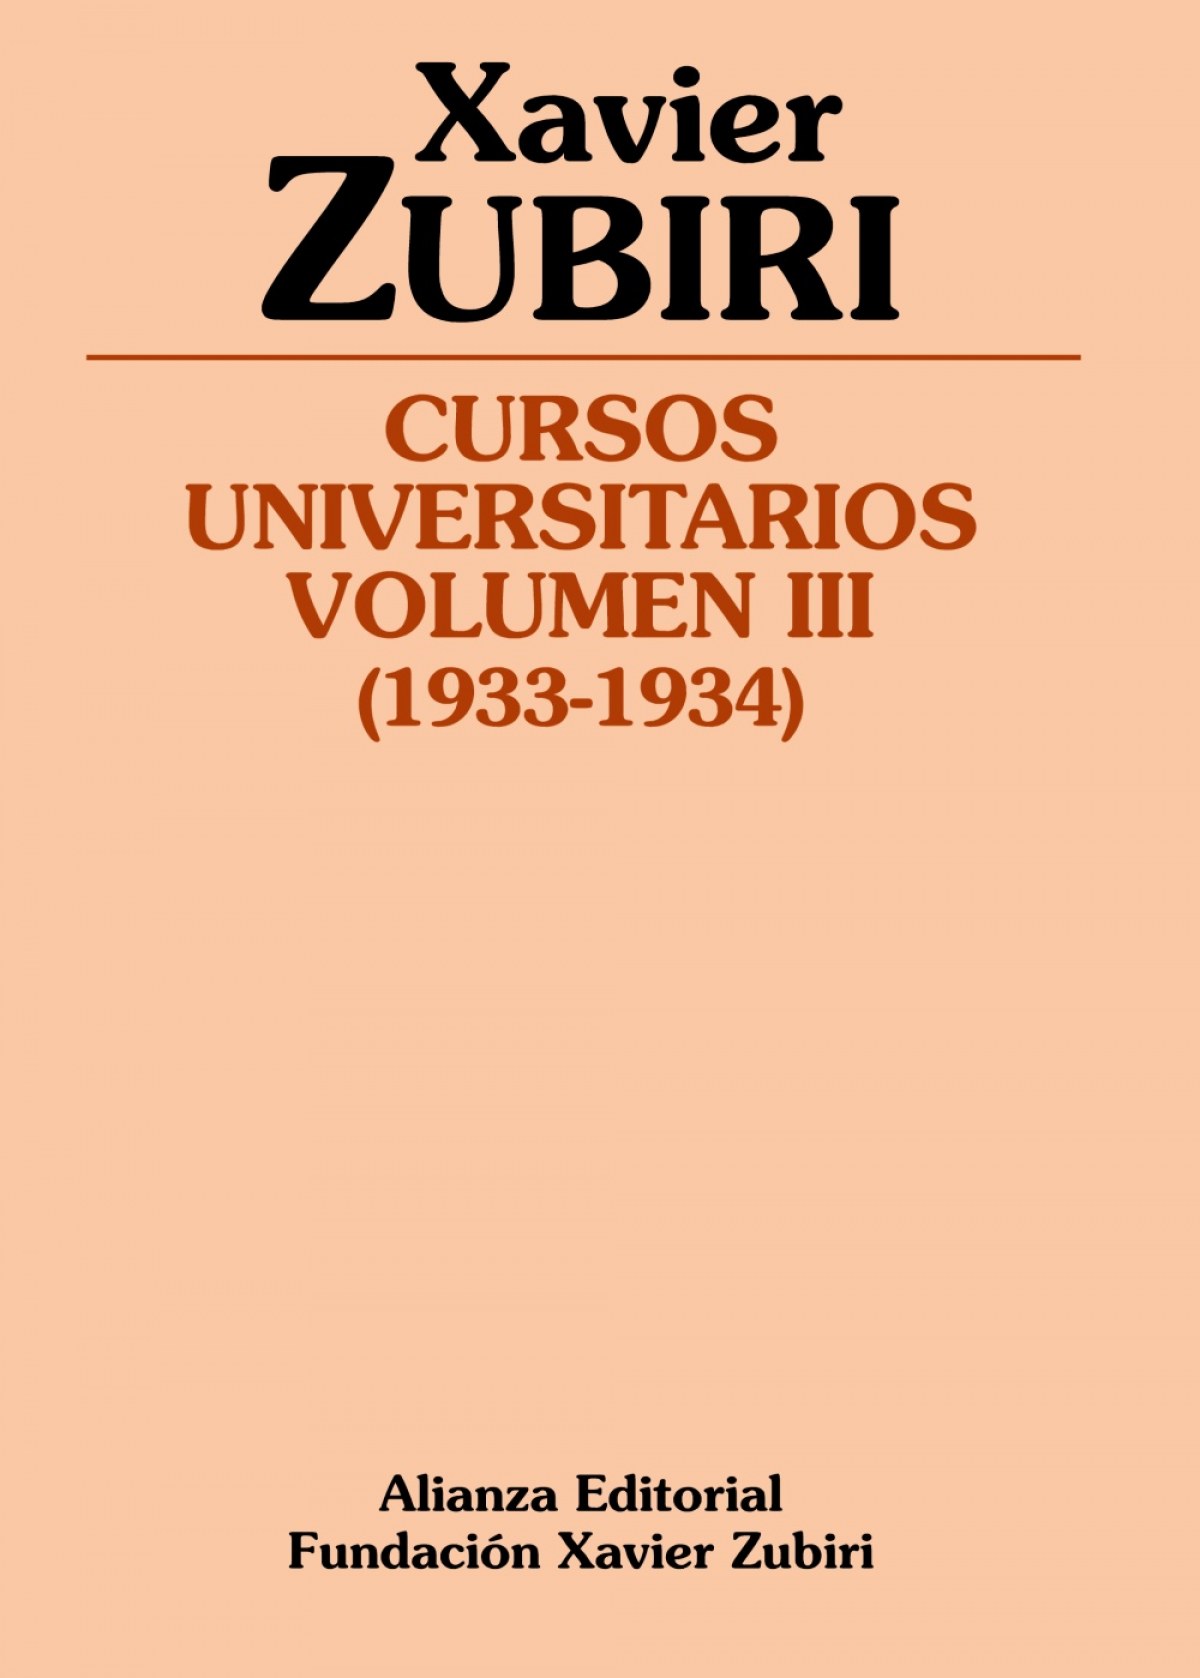 Cursos universitarios vol.3 - Zubiri, Xavier